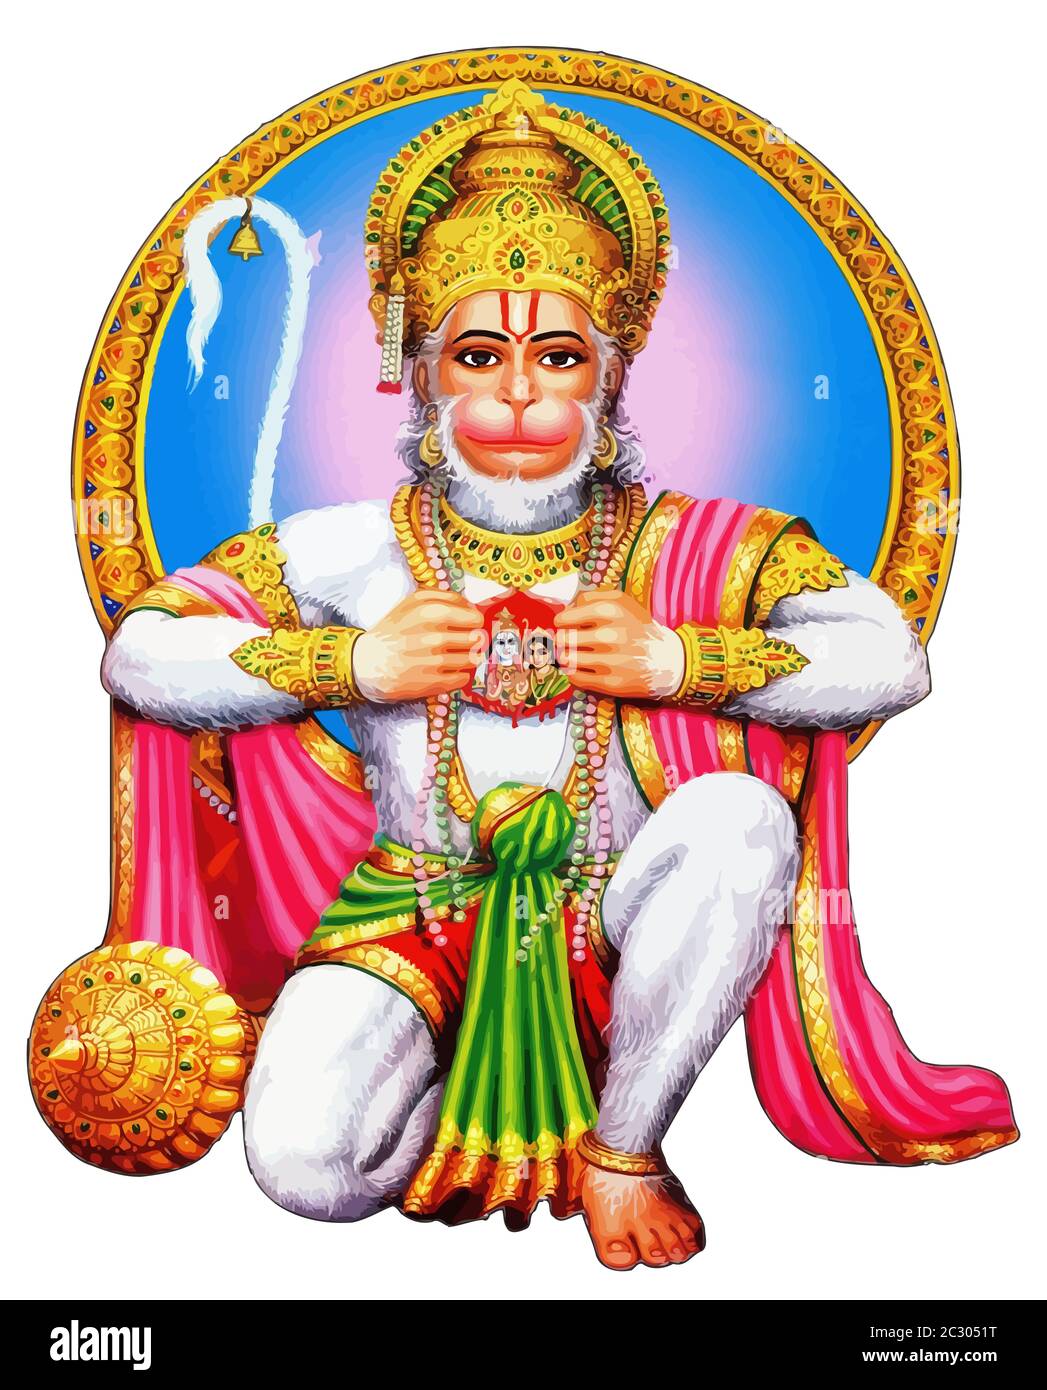 indian god monkey holy hanuman jayanti illustration Stock Photo ...